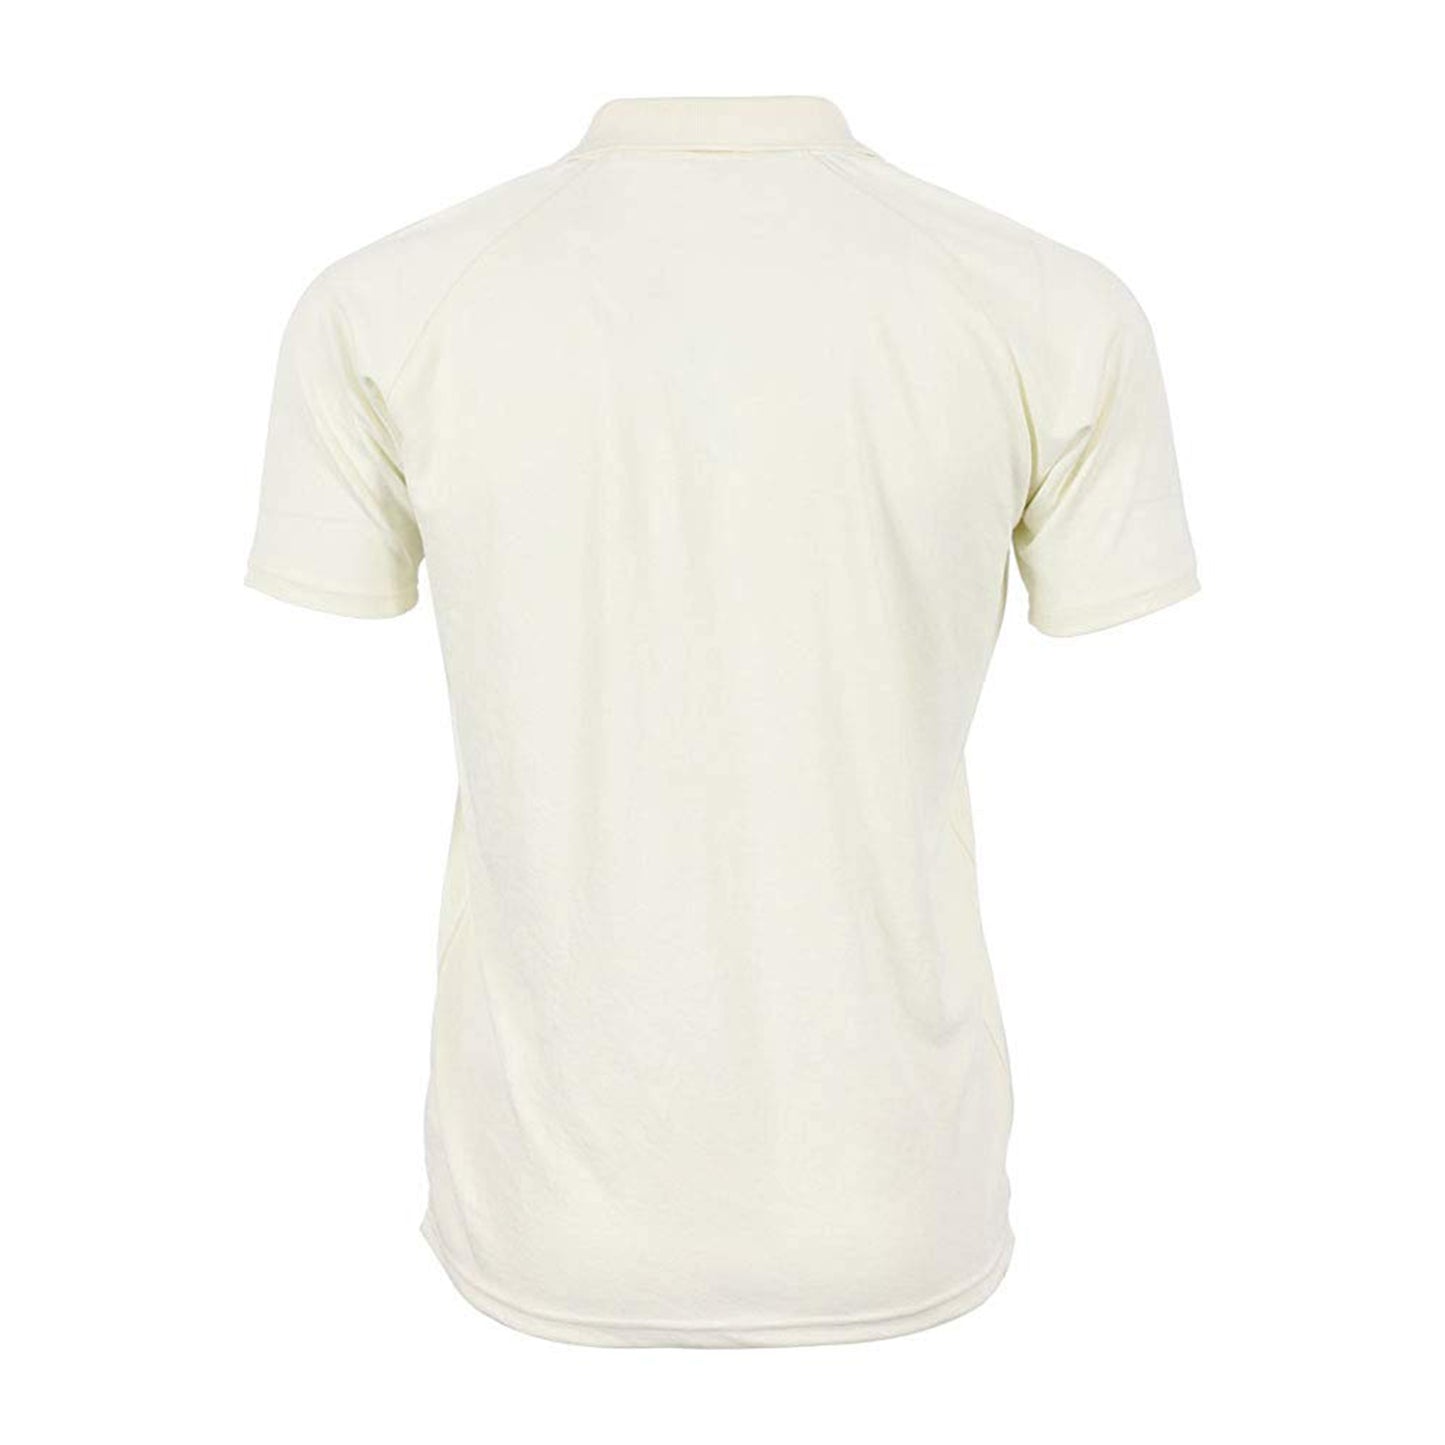 Shrey Match Cricket T-Shirt for Juniors - Best Price online Prokicksports.com